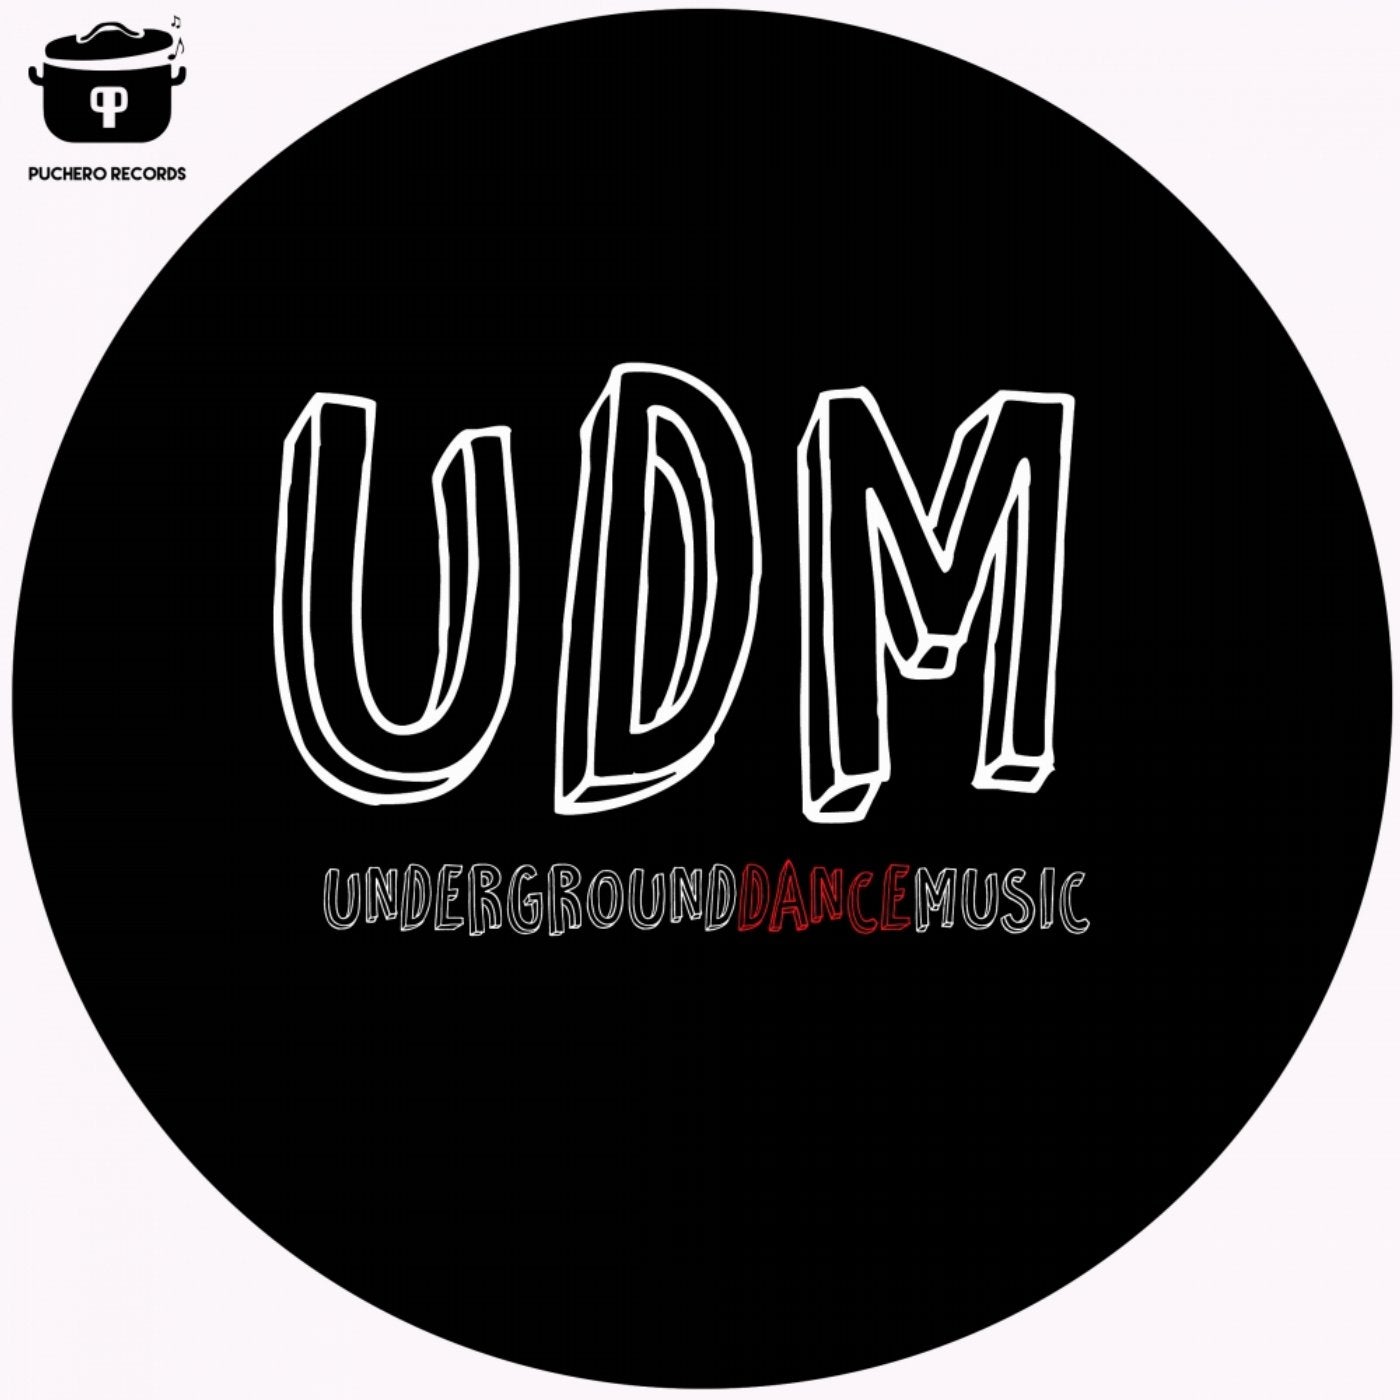 UDM Underground Dance Music